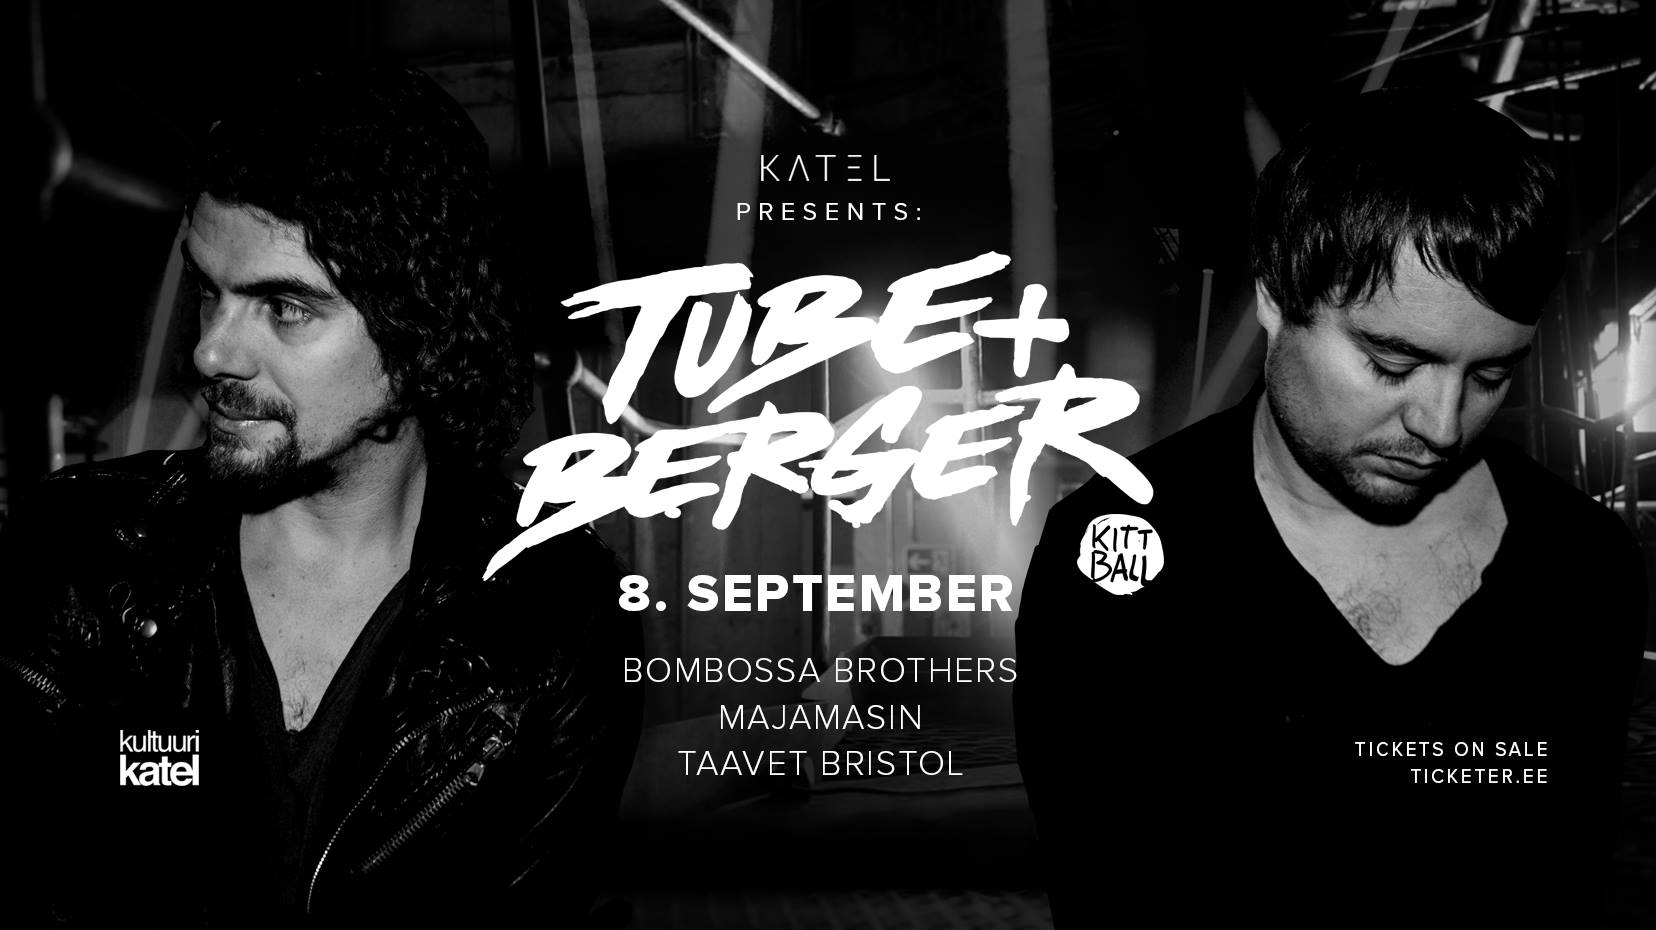 7949Katel presents: Tube & Berger (Kittball, GER)